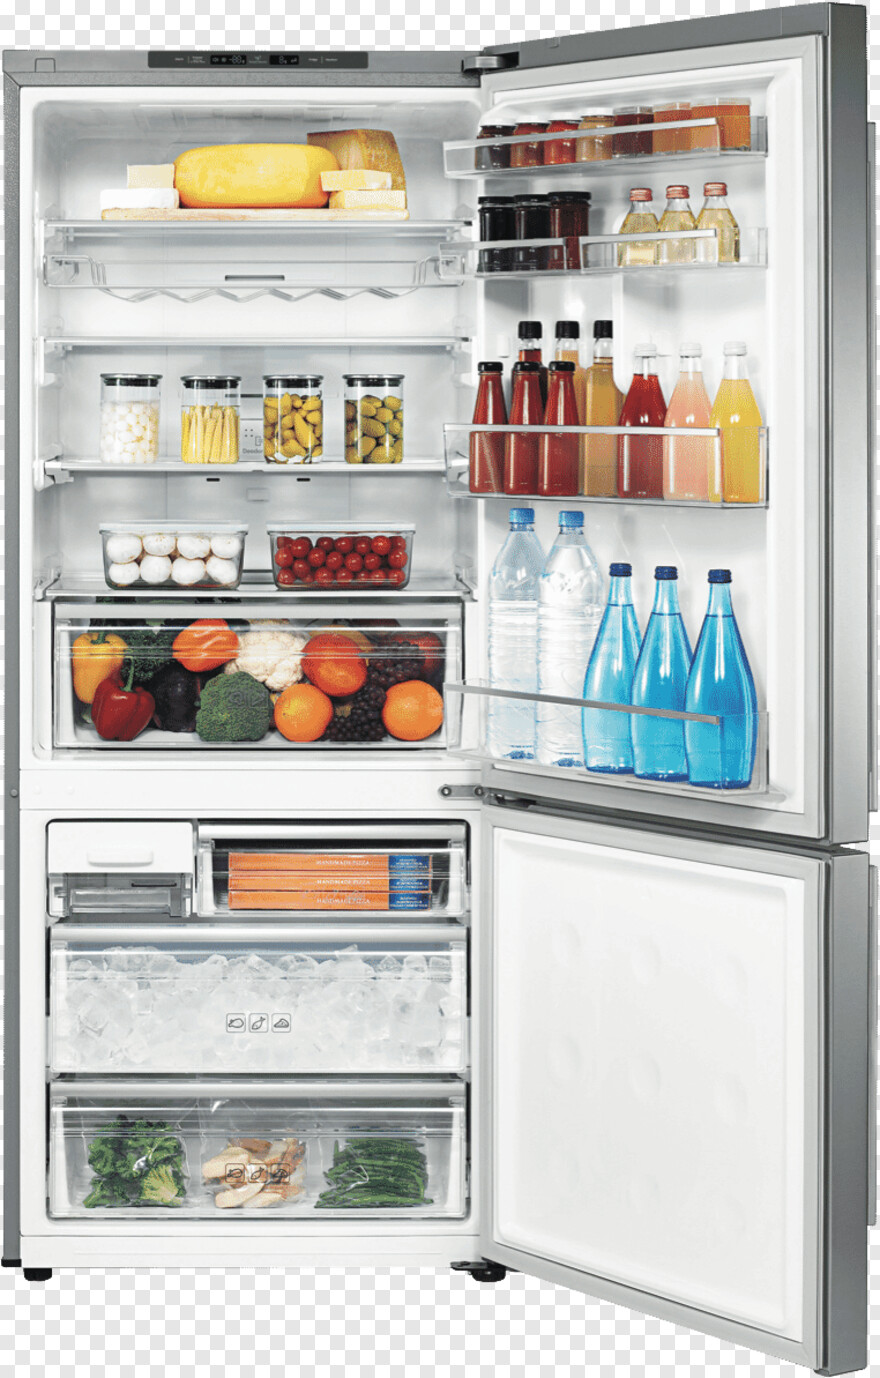 refrigerator # 324269